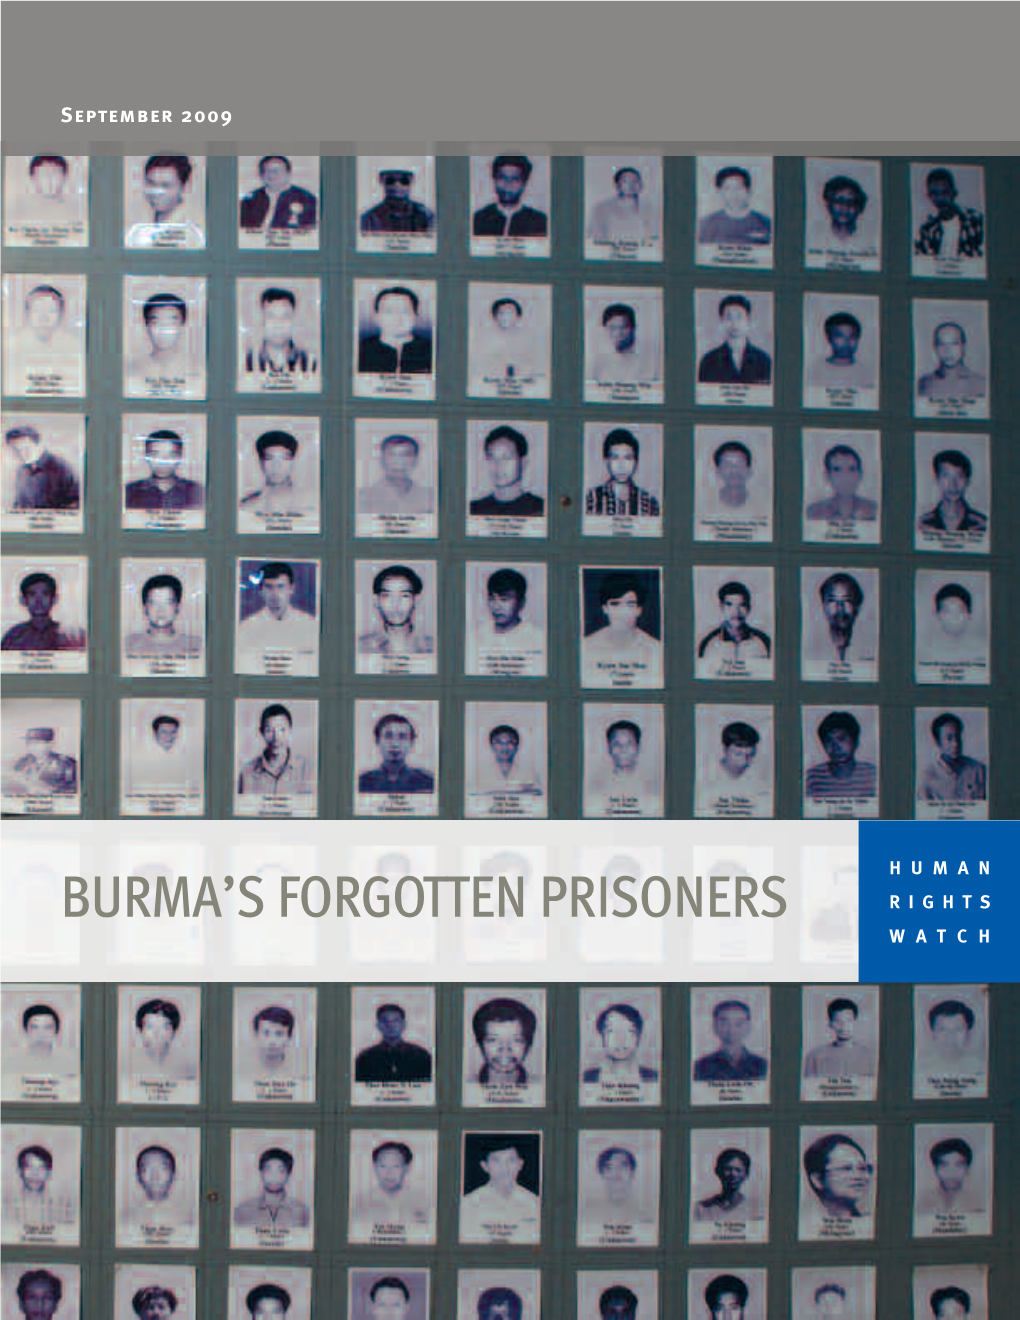 Burma's Forgotten Prisoners Profiles Courageous Individuals Behind Bars in Burma